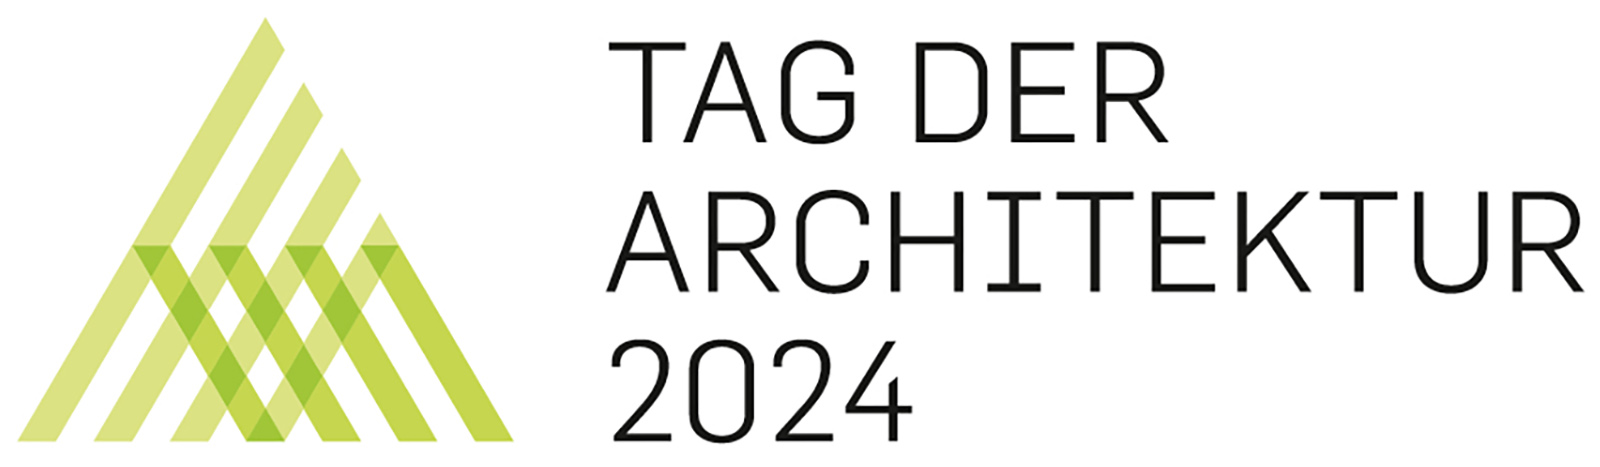 tag-der-architektur-2024-324-luisenstrasse-ffm-architekten